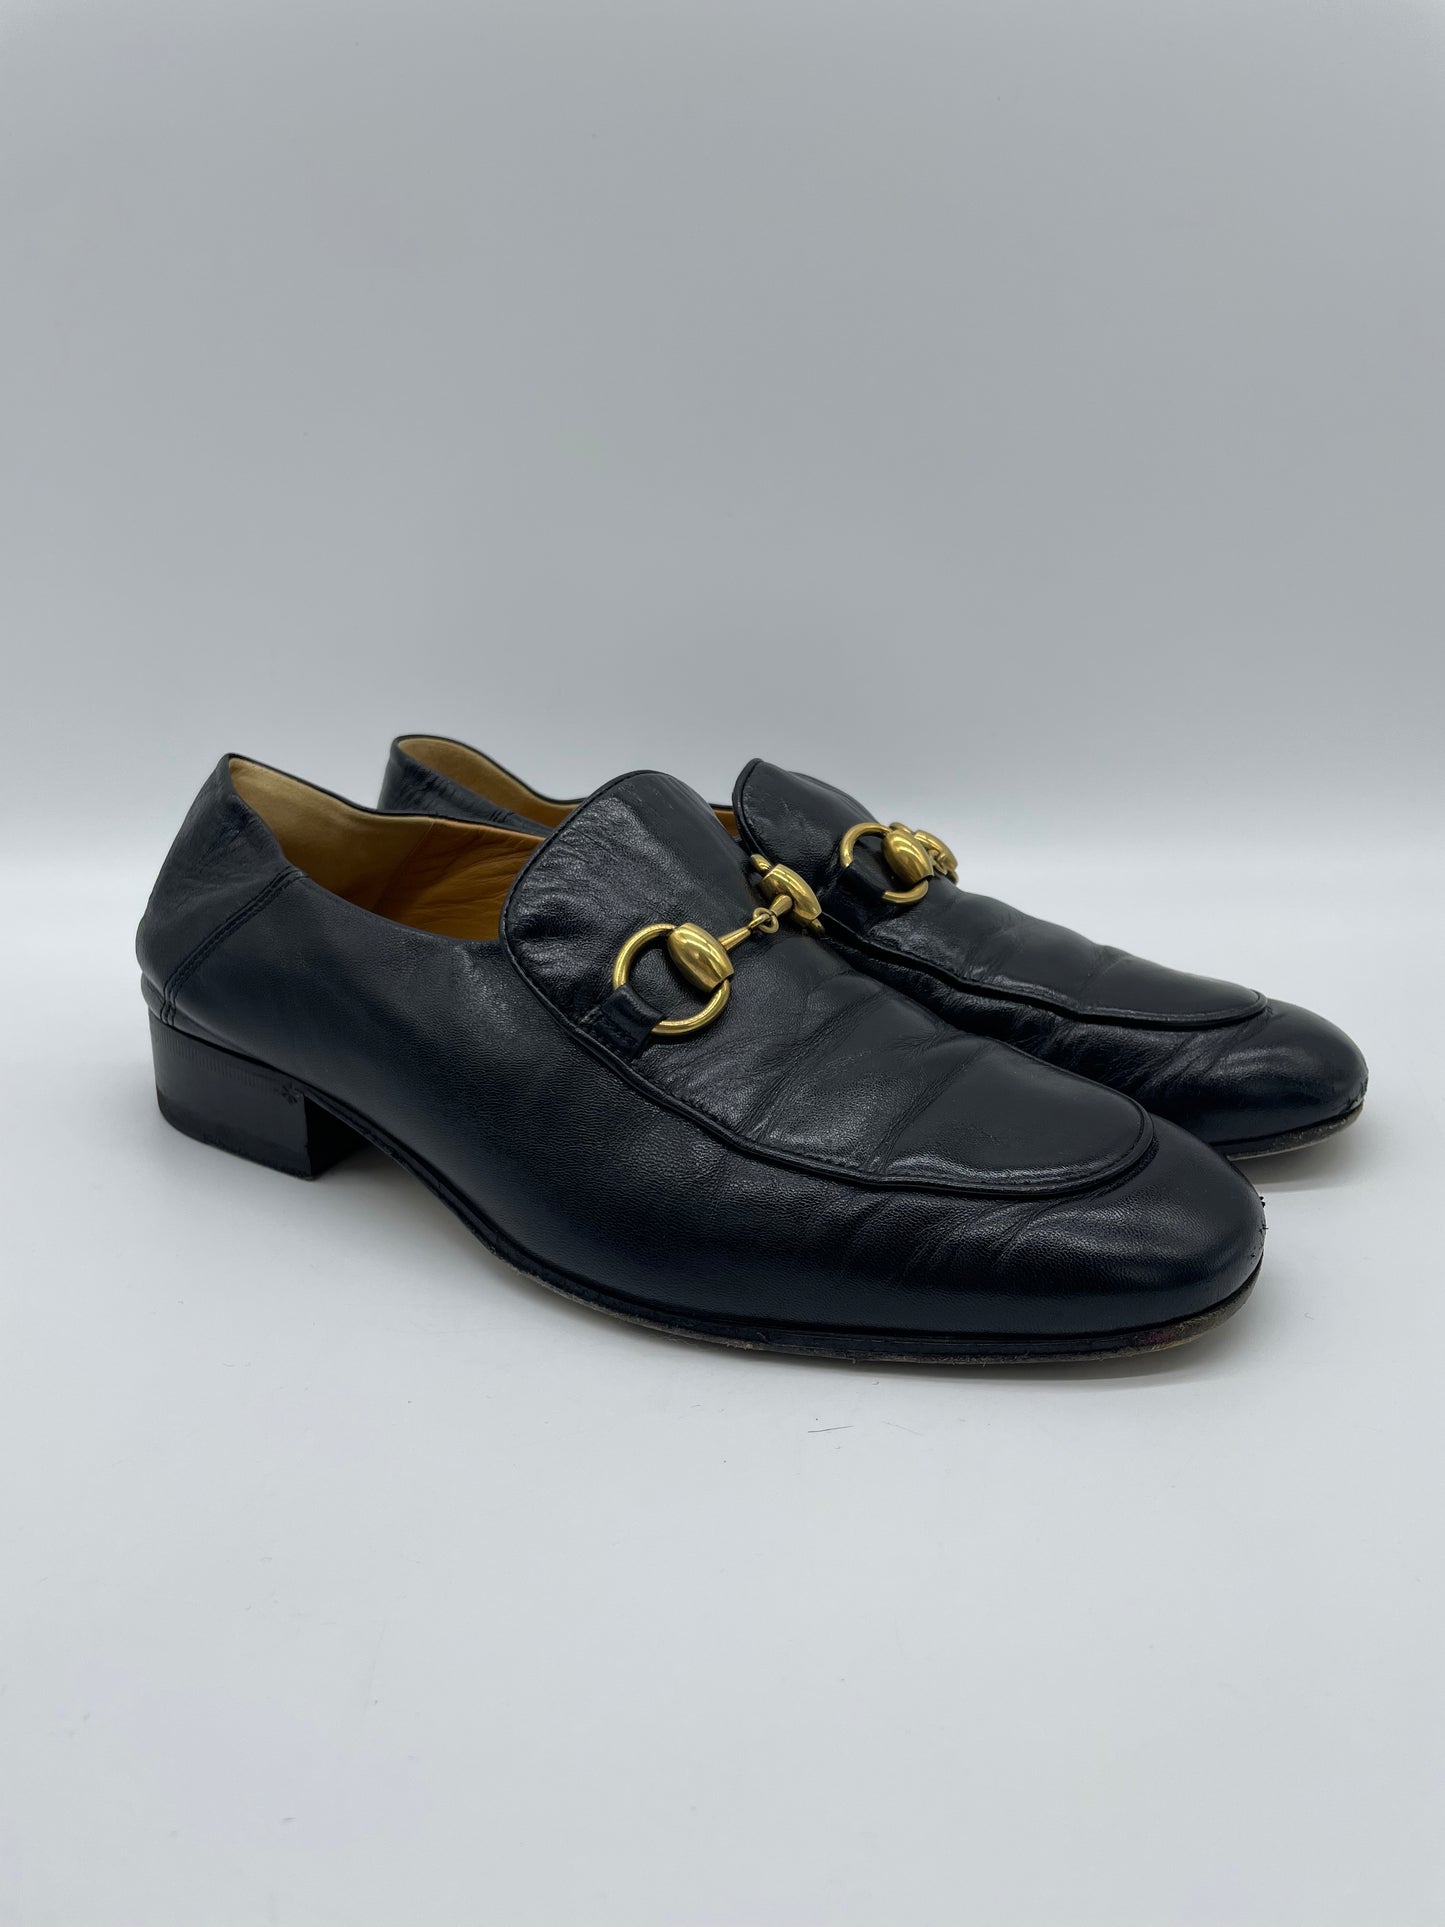 Mocassino Gucci 1955 Horsebit Accent Leather Loafers - Numero 37